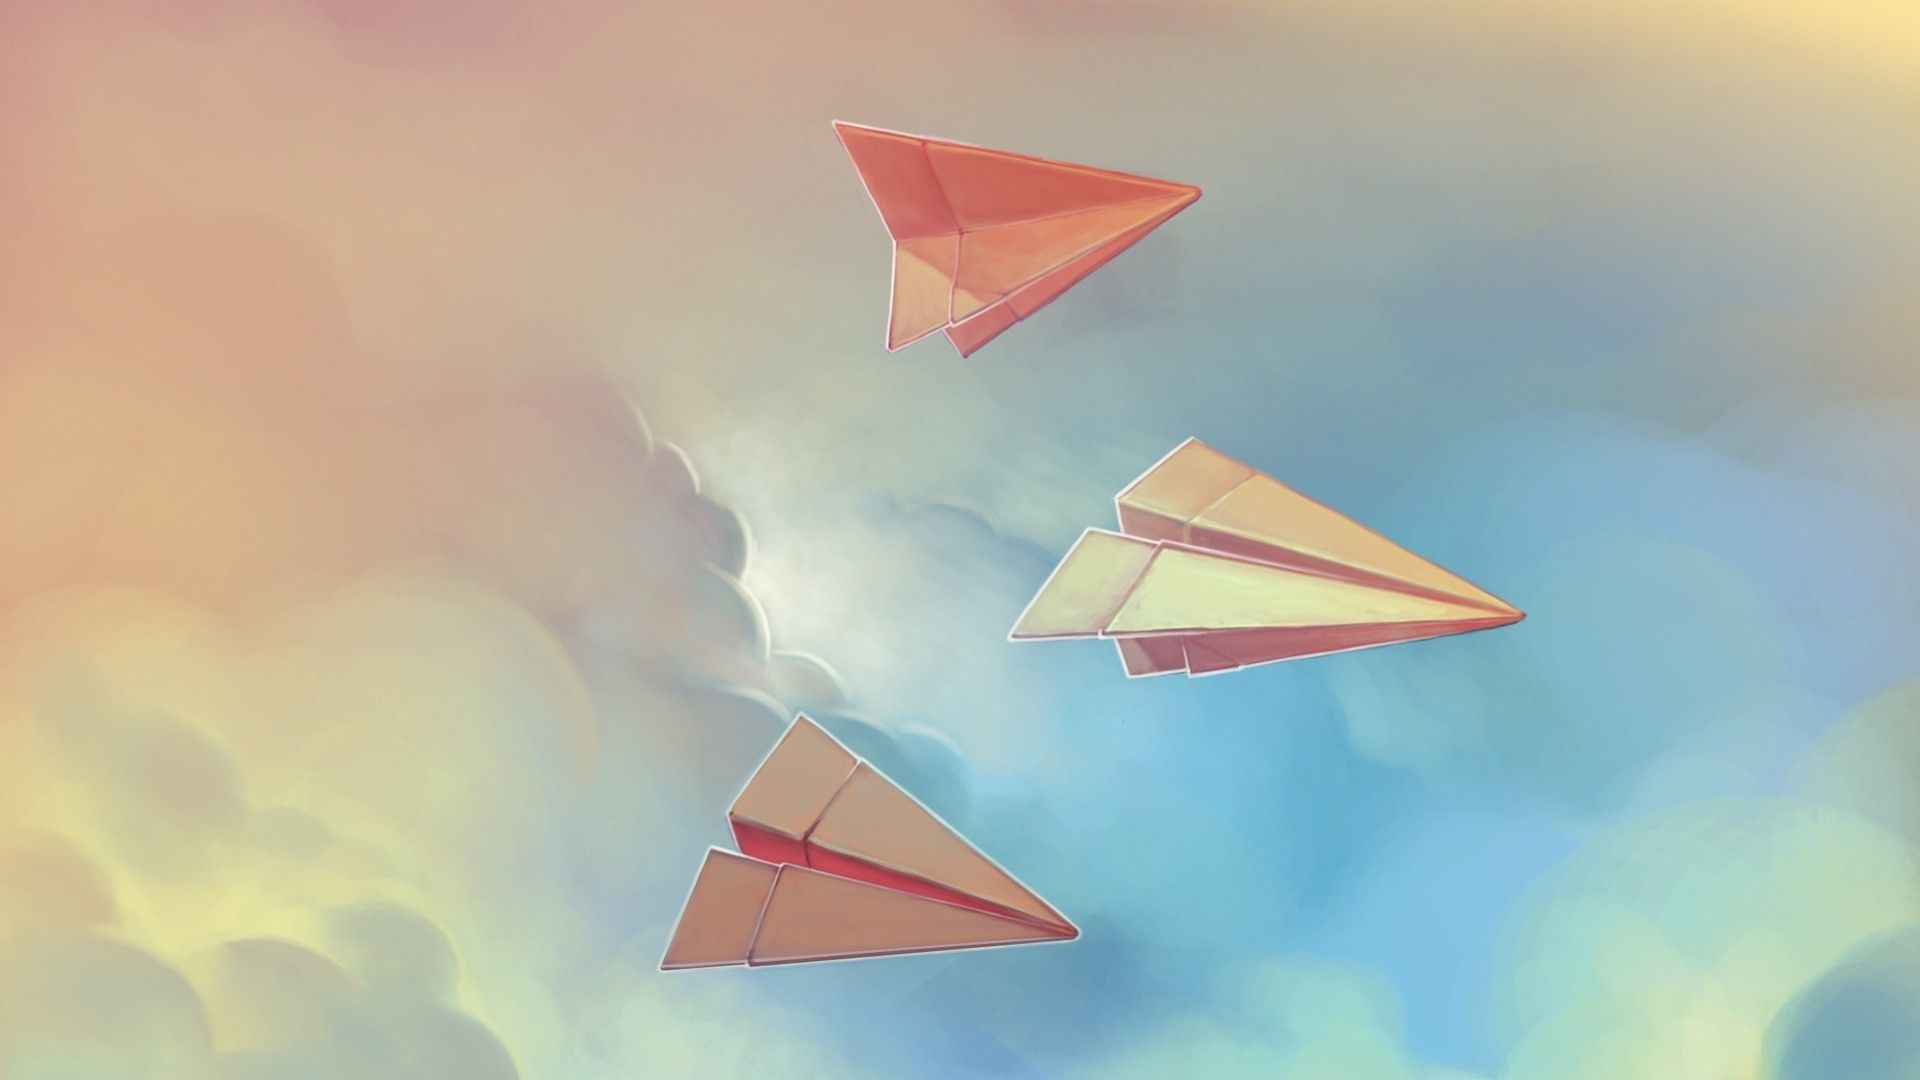 نقاشی قشنگ و رویایی موشک های کاغذی در آسمان با کیفیت hd